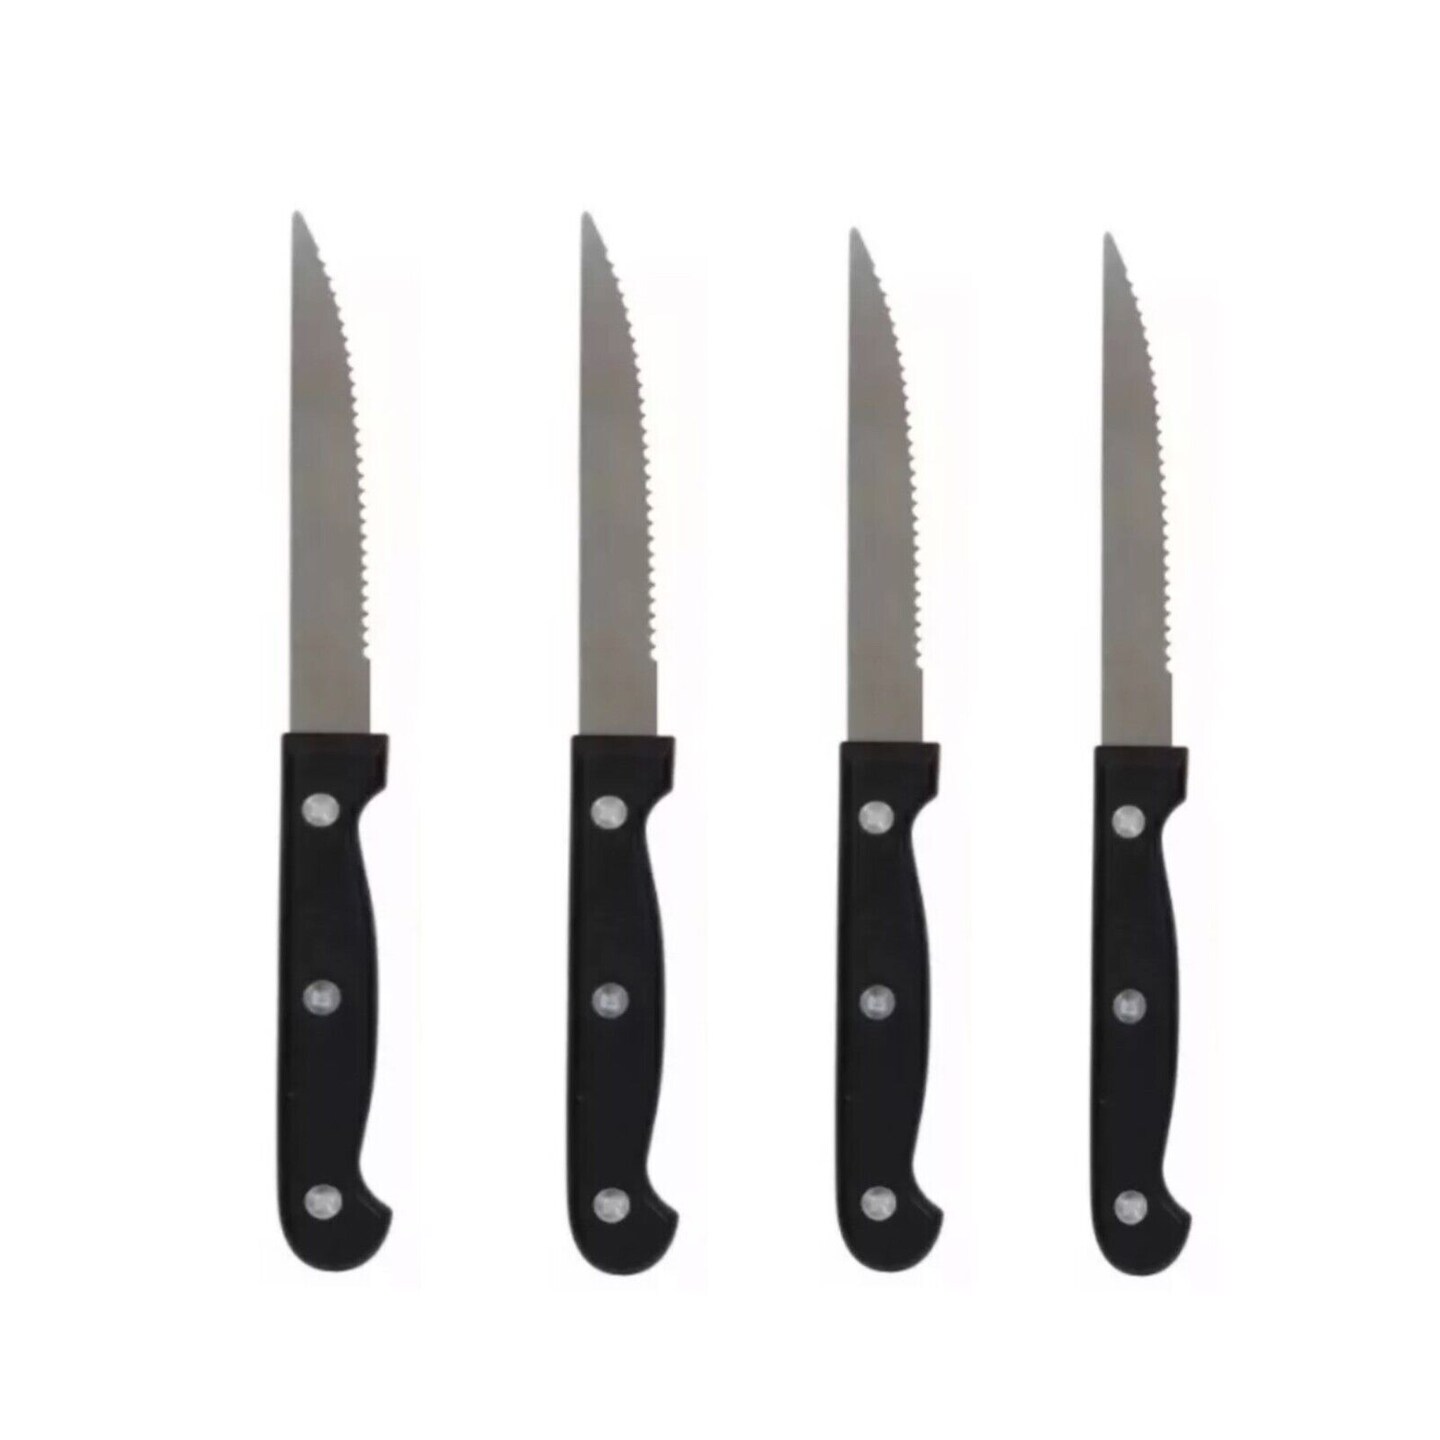 7.5 Inches Serrated Edge Steak Knife 4 pcs